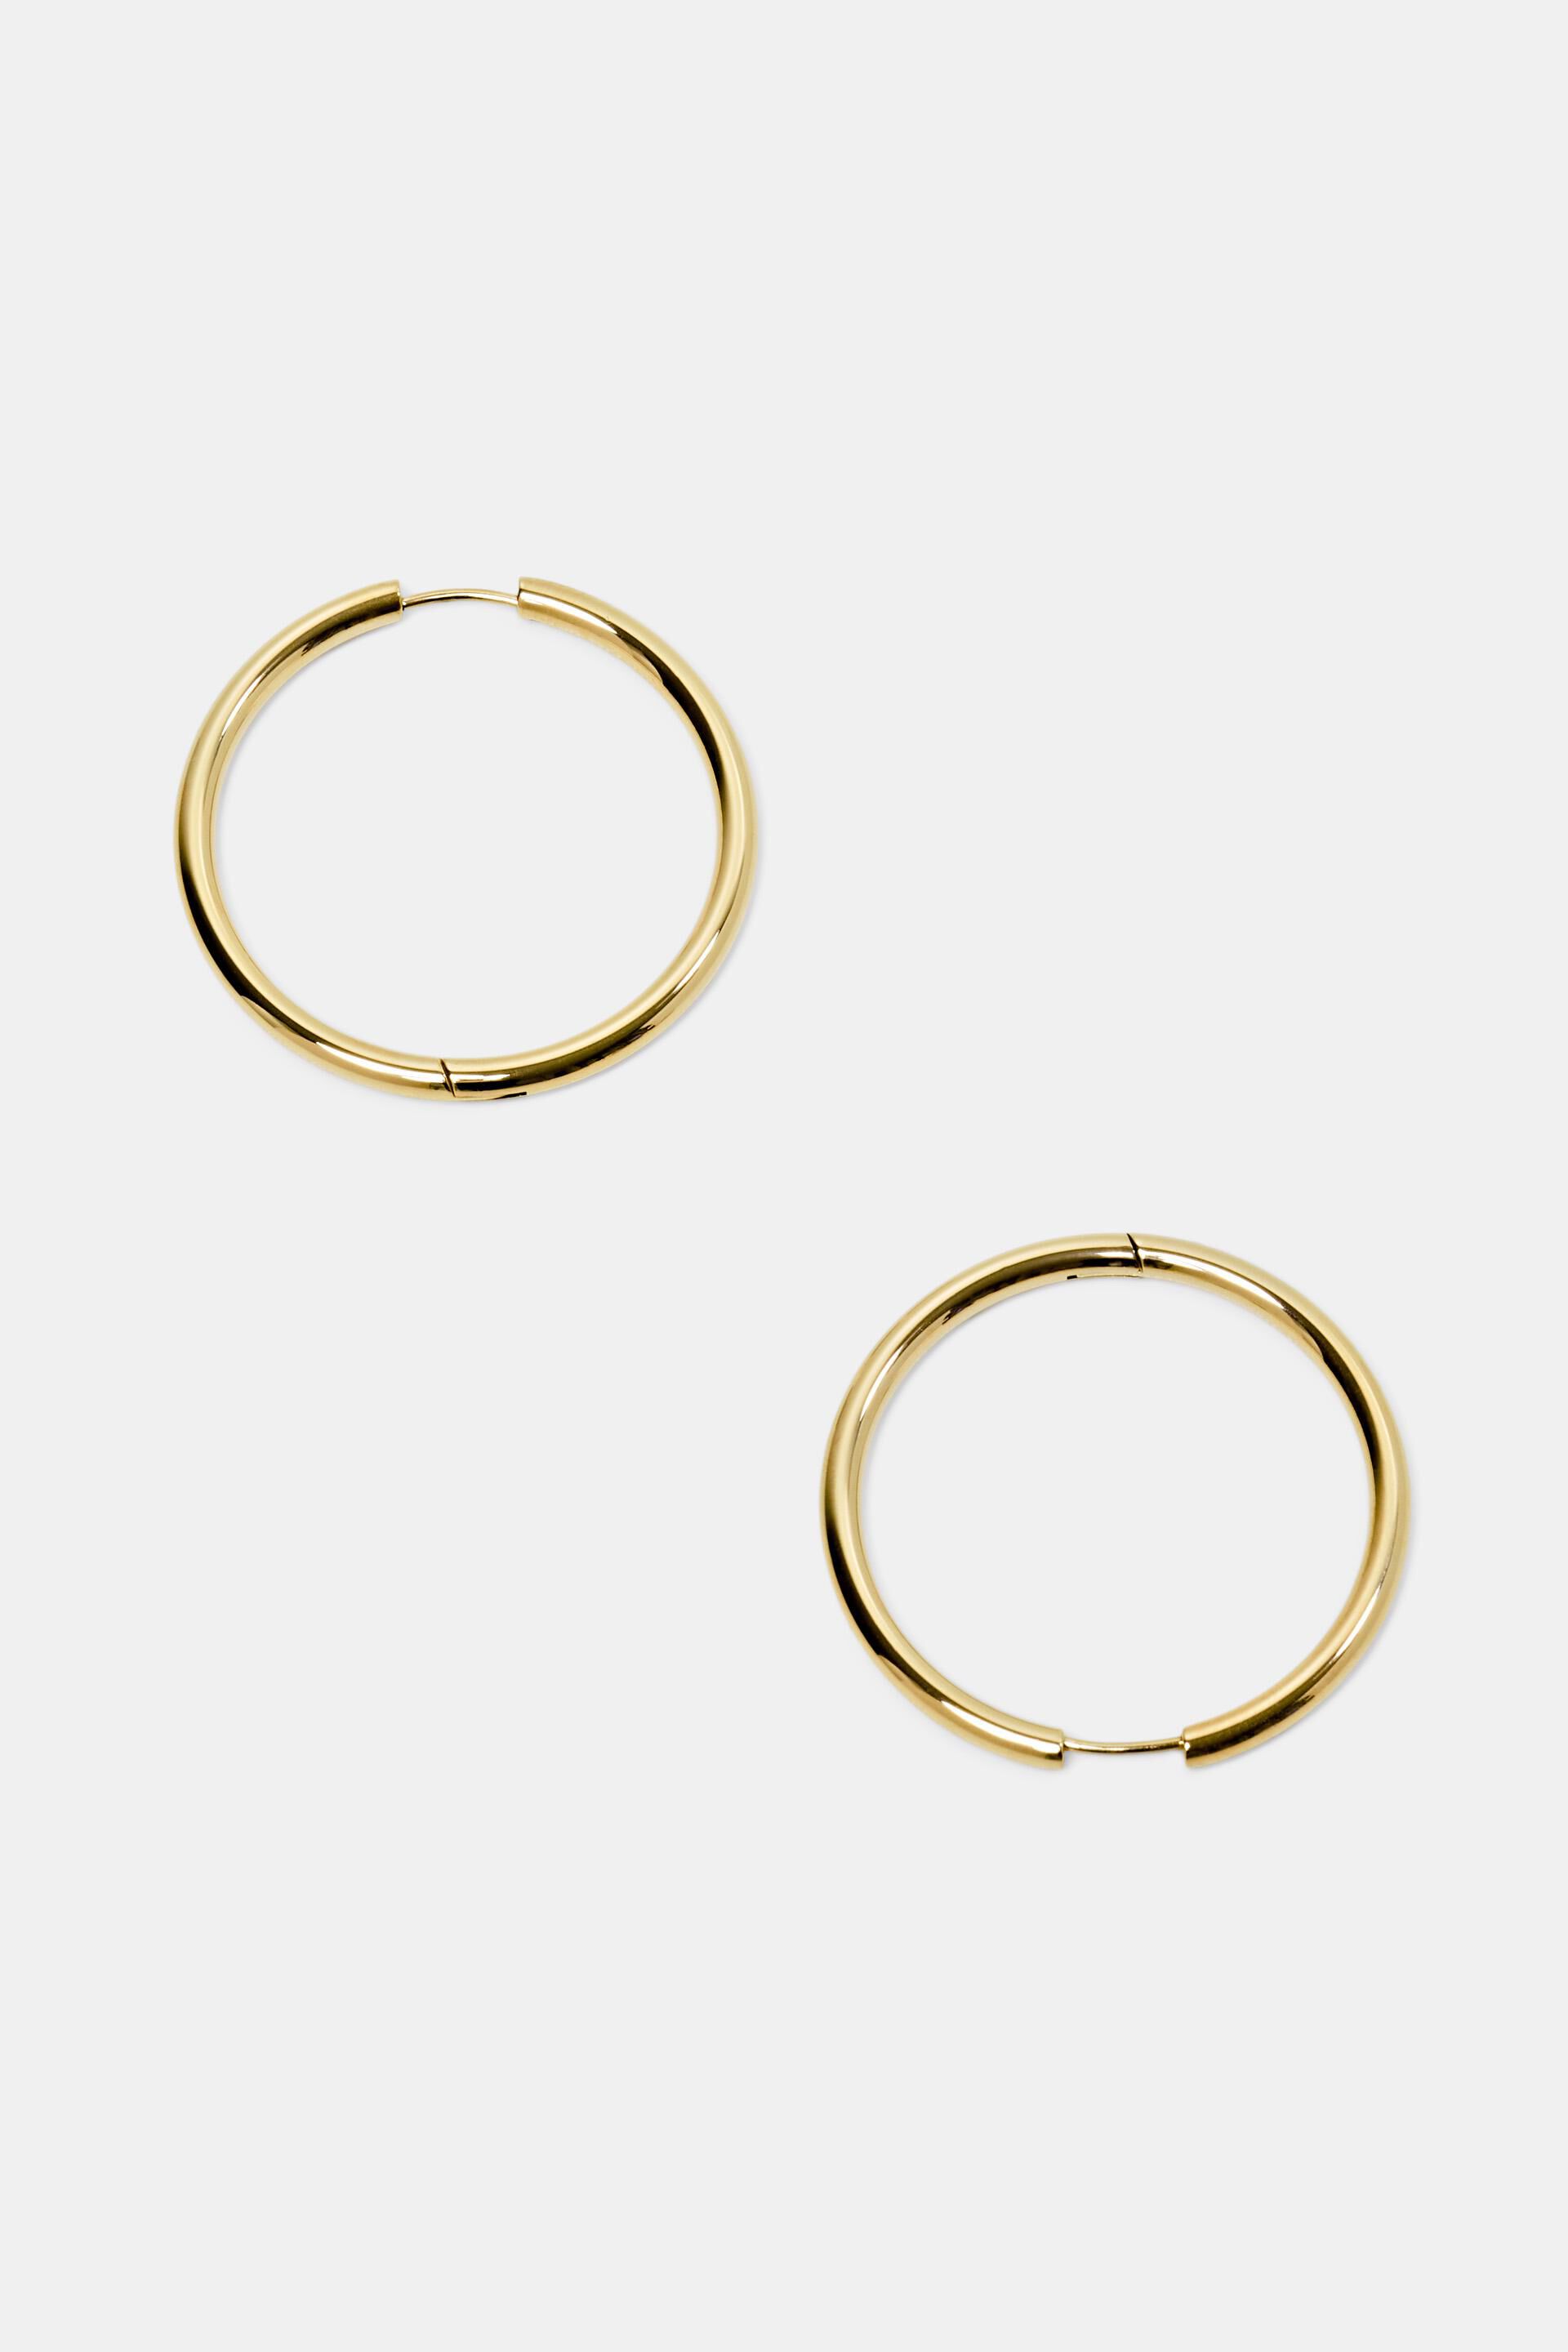 Esprit earrings, stainless steel Hoop